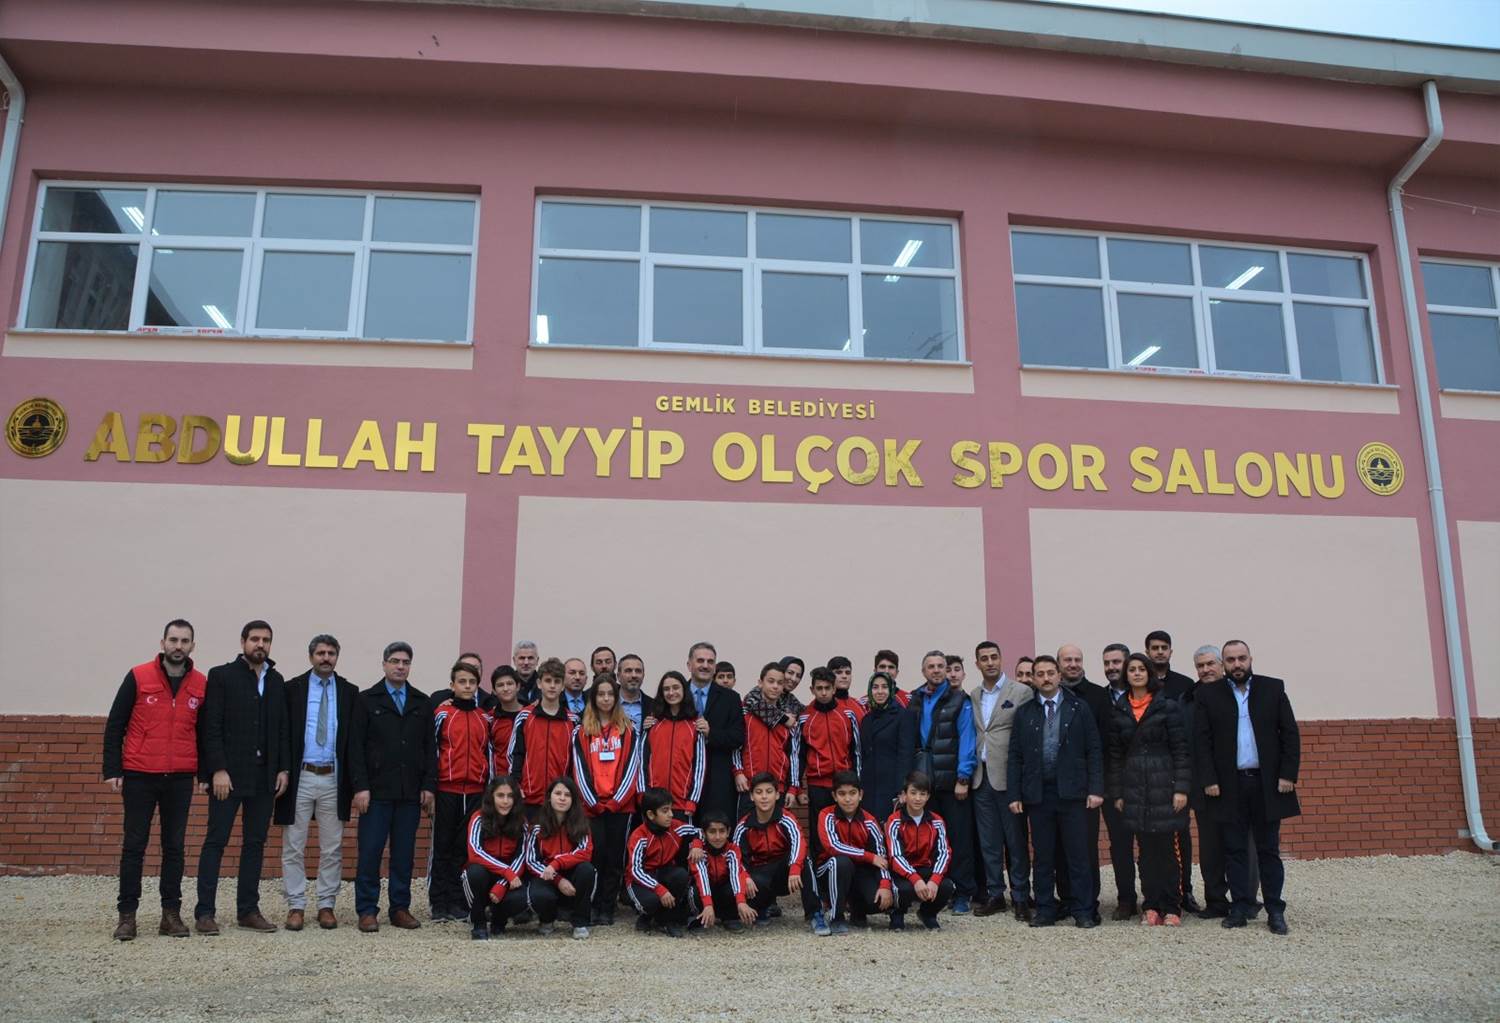 Abdullah Tayyip Olçok Spor Salonu